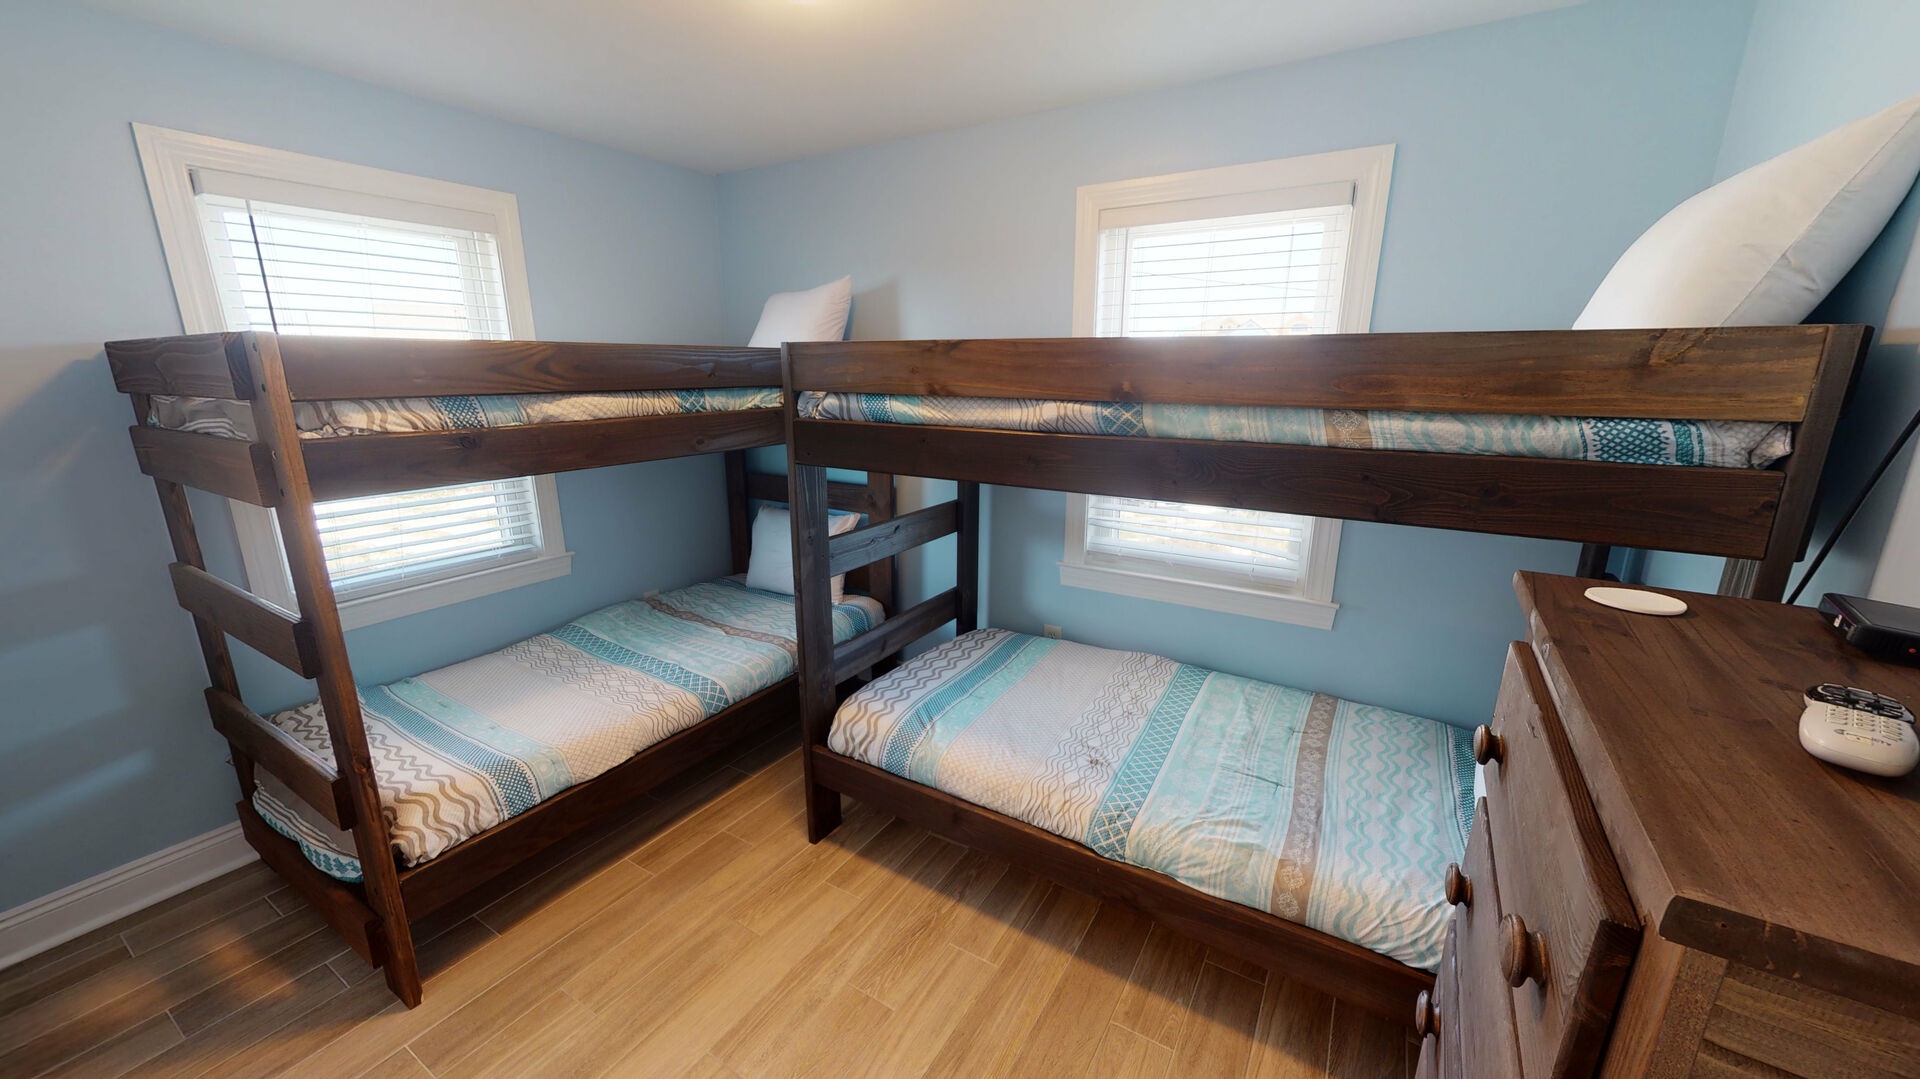 Bedroom 3, 2 twin over twin bunks, sleeps 4, TV